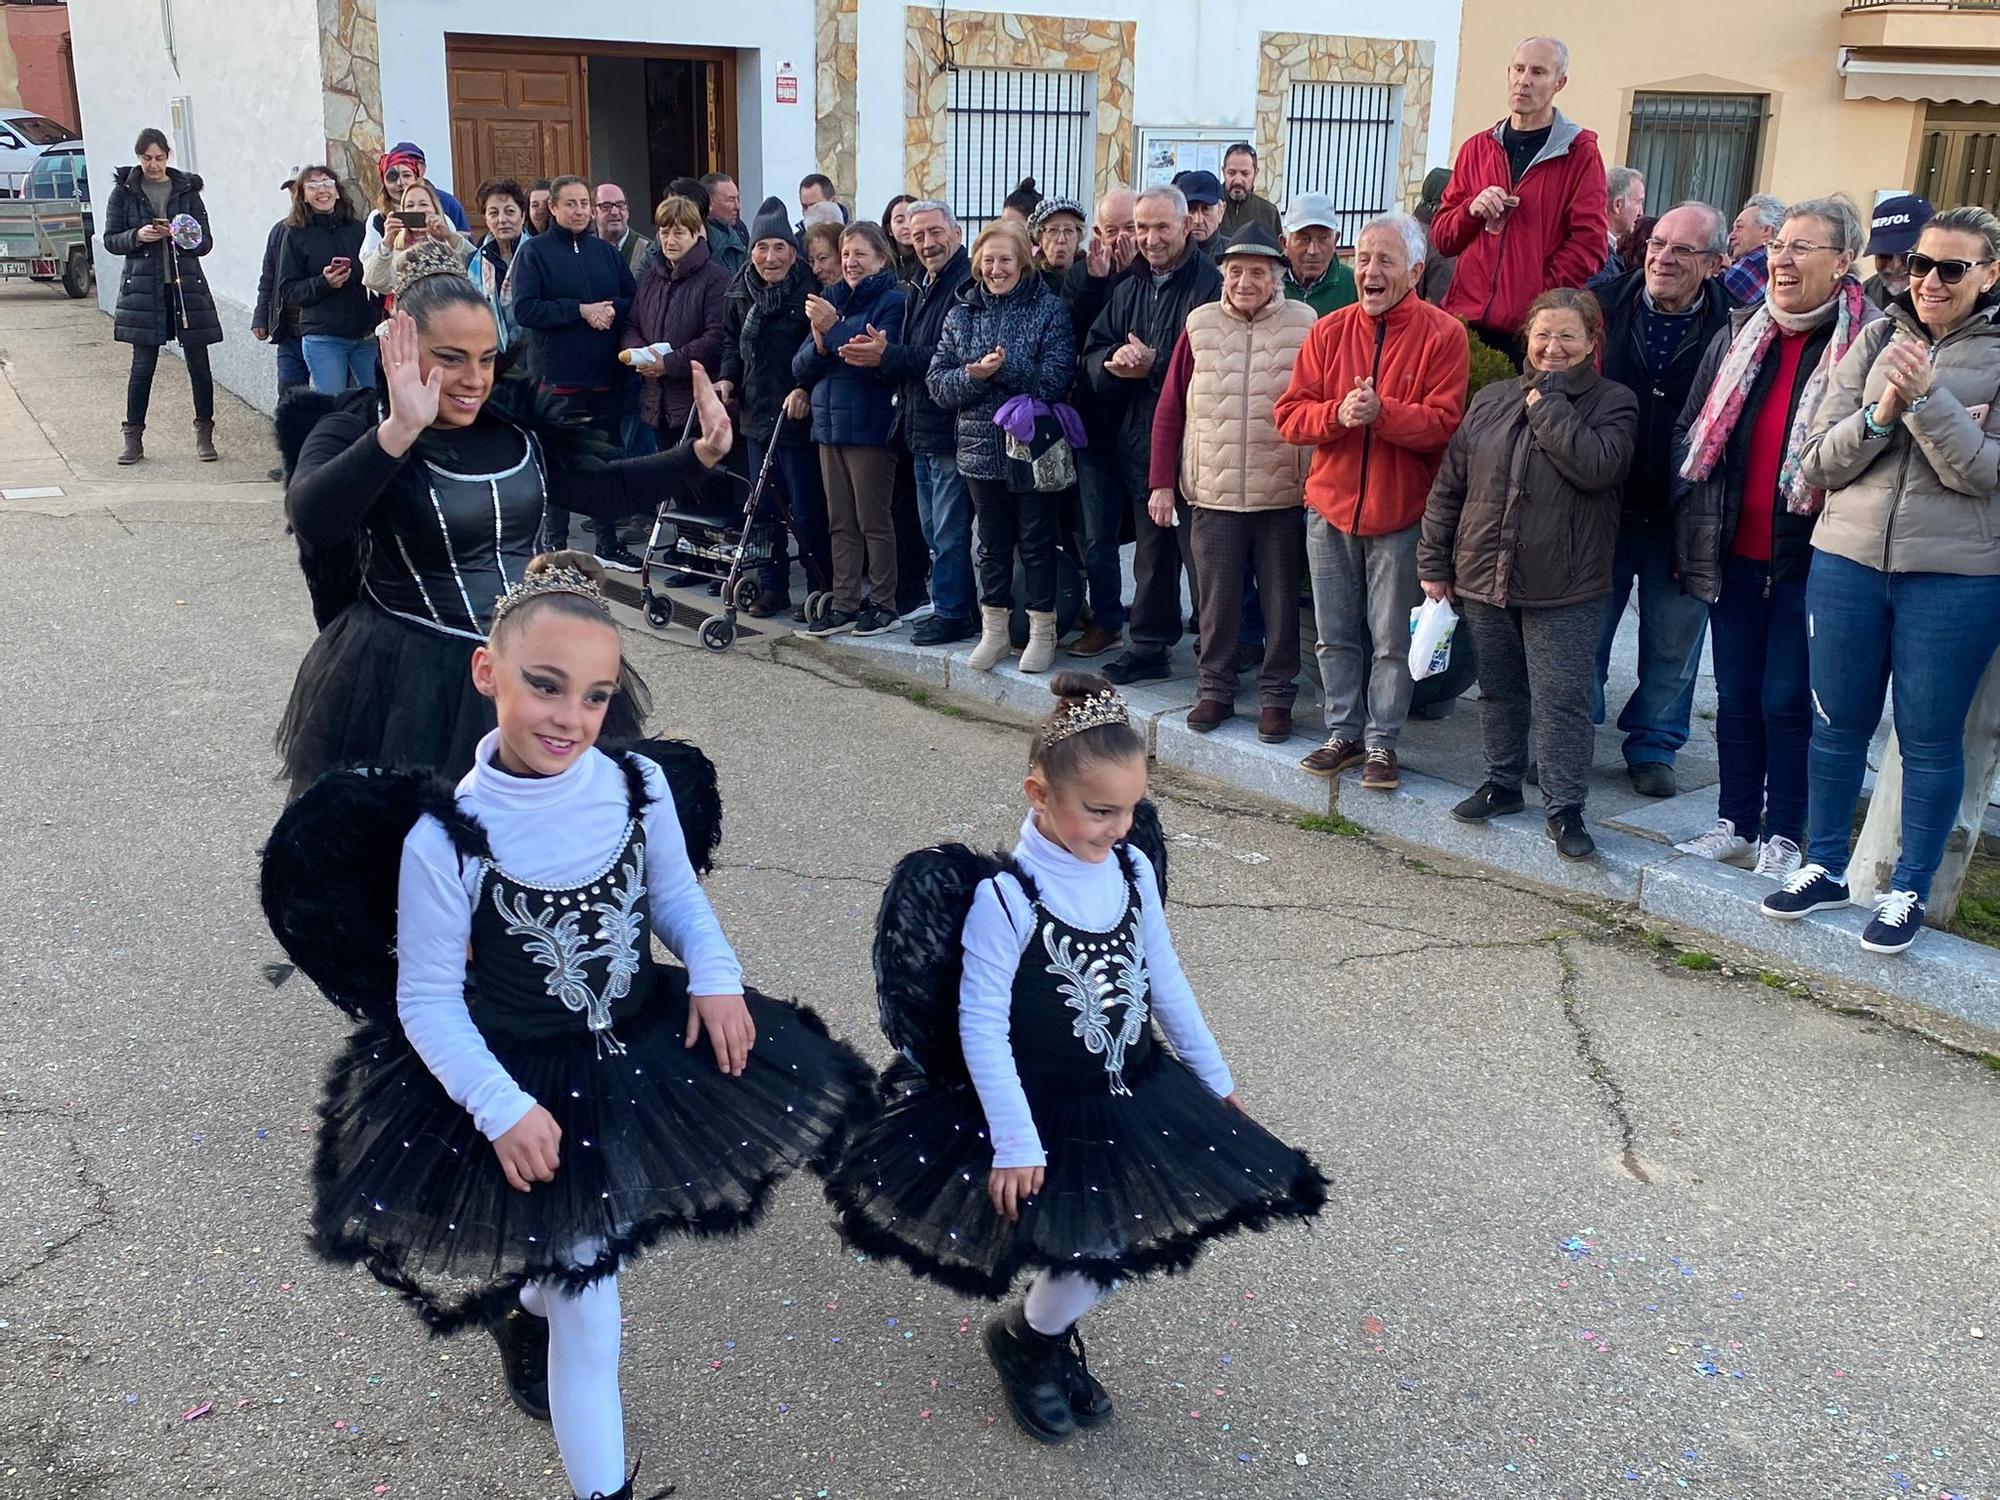 Martes de Carnaval en Burganes de Valverde